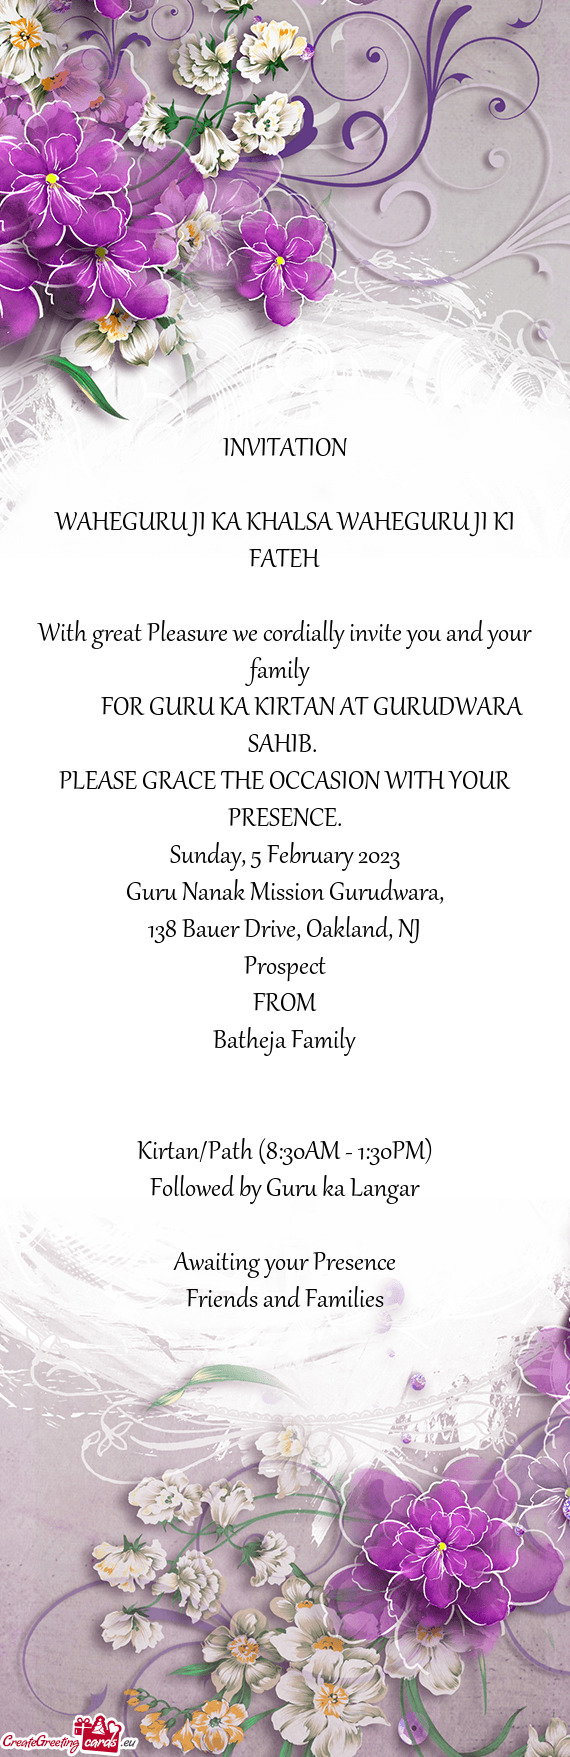 FOR GURU KA KIRTAN AT GURUDWARA SAHIB